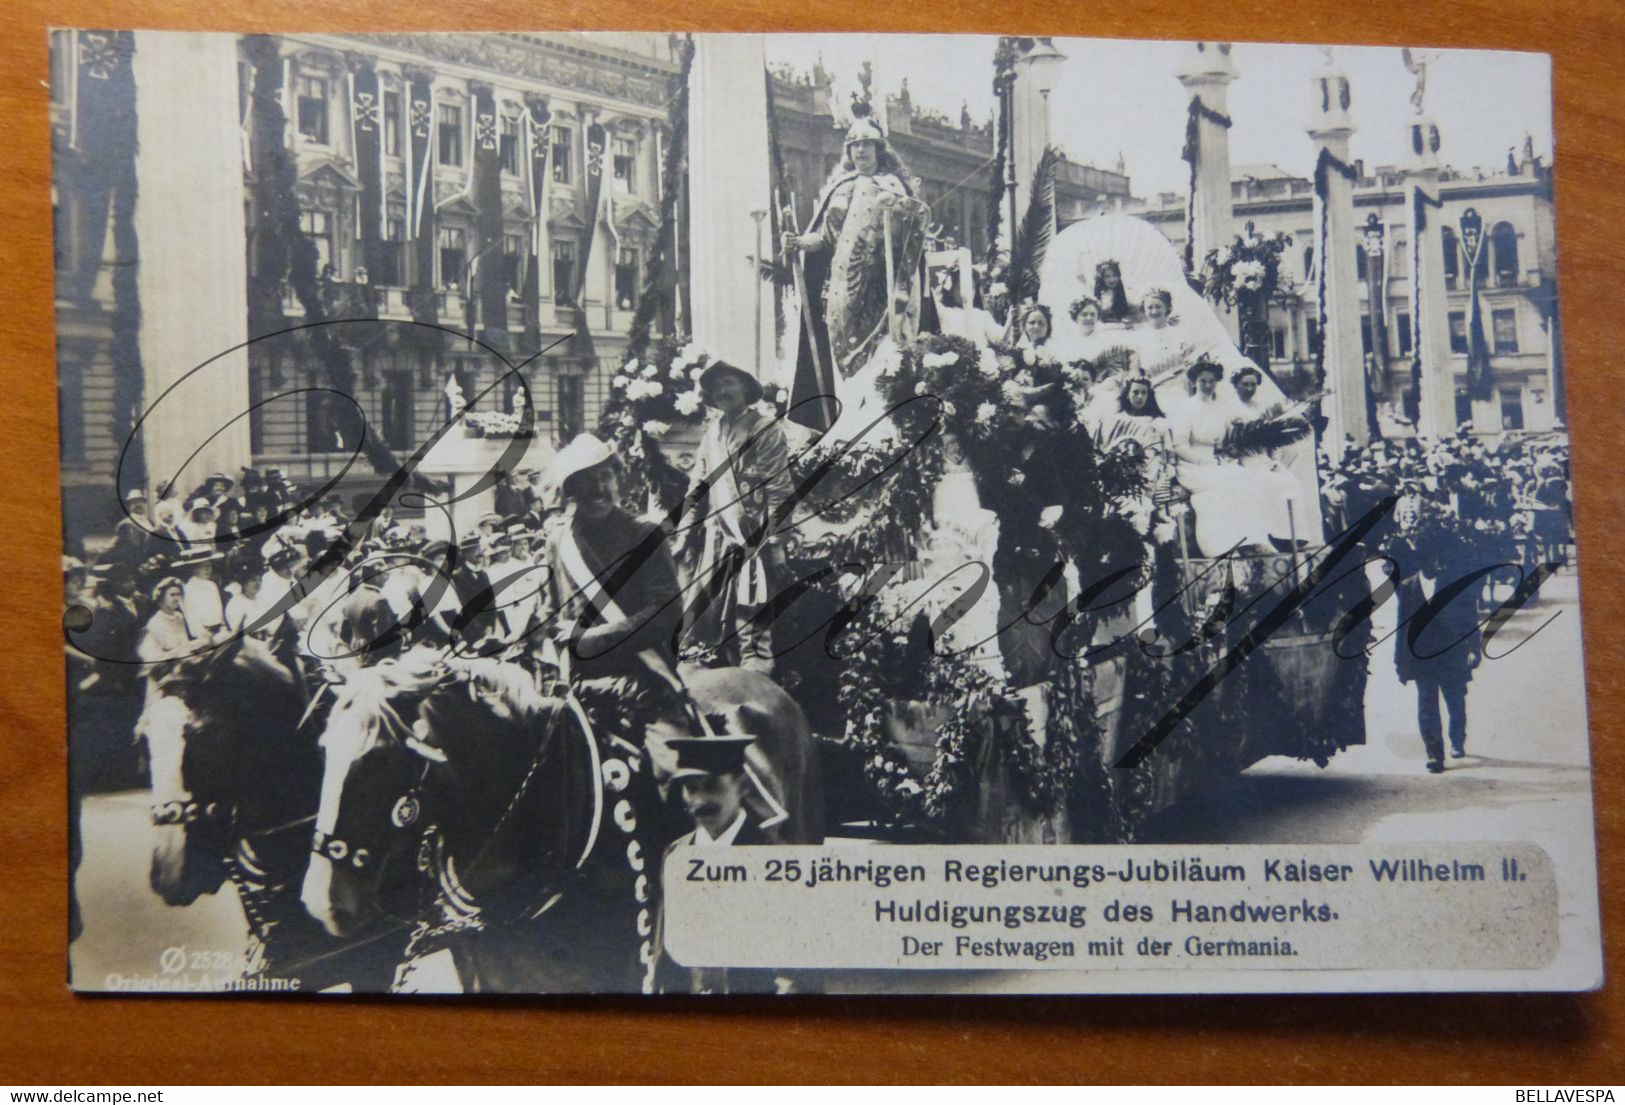 25 Jährigen Regierungs-Jubilaum KAISER WILHELM II - Germany.Festwagen Mit Der Germania.RPPC - Politicians & Soldiers